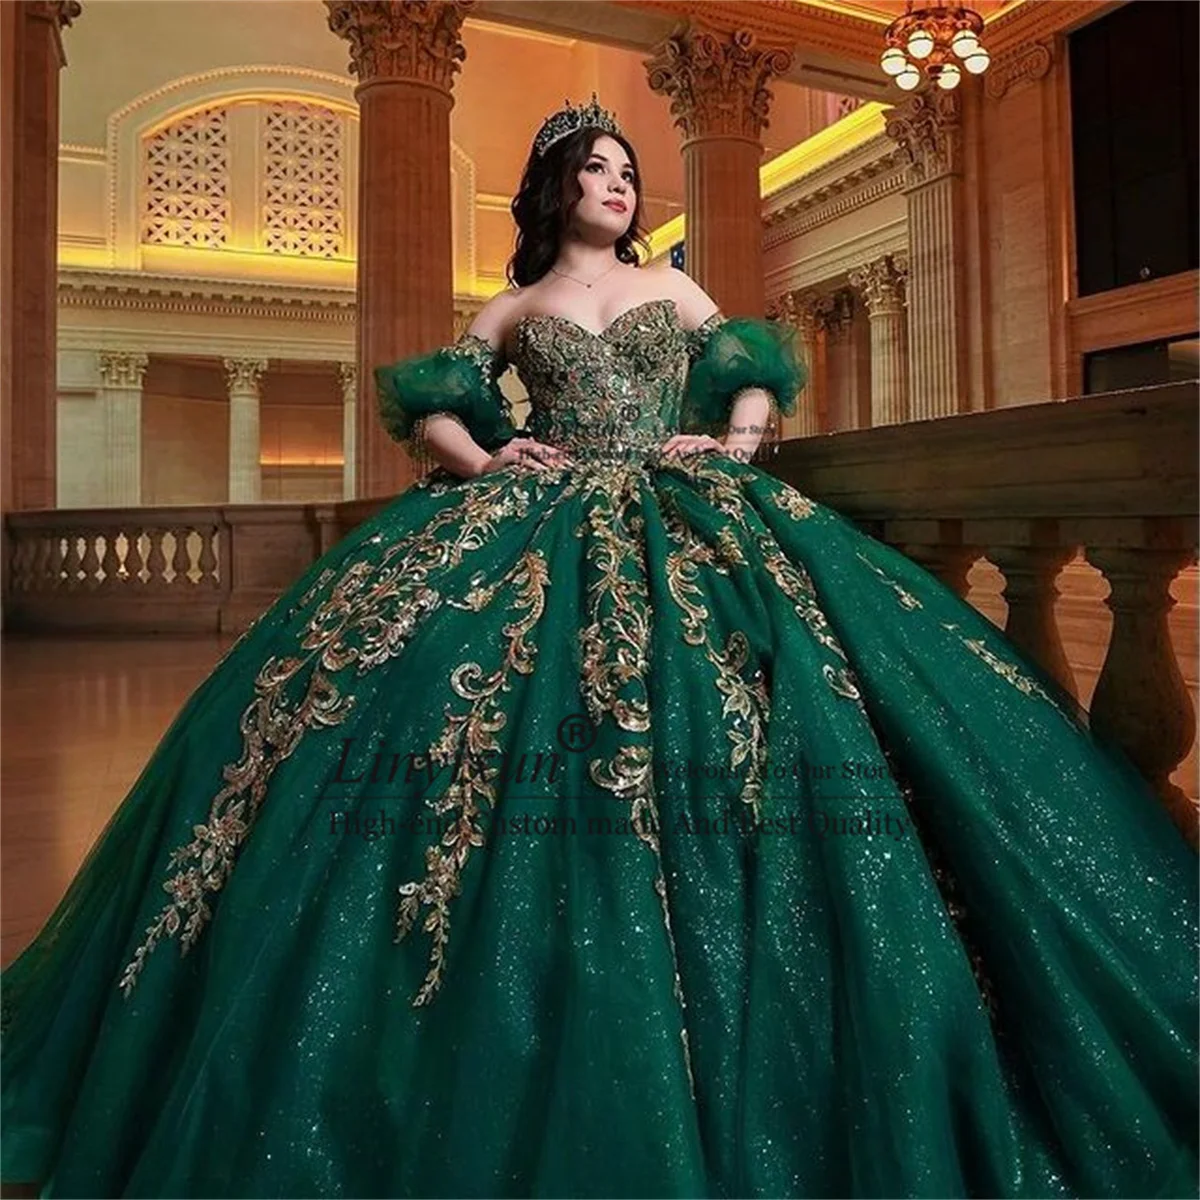 

Elegant Emerald Green Ball Gown Quinceanera Dresses Appliques Beading Crystals Off Shoulder 16 Dress Vestido De 15 Anos Lace-Up